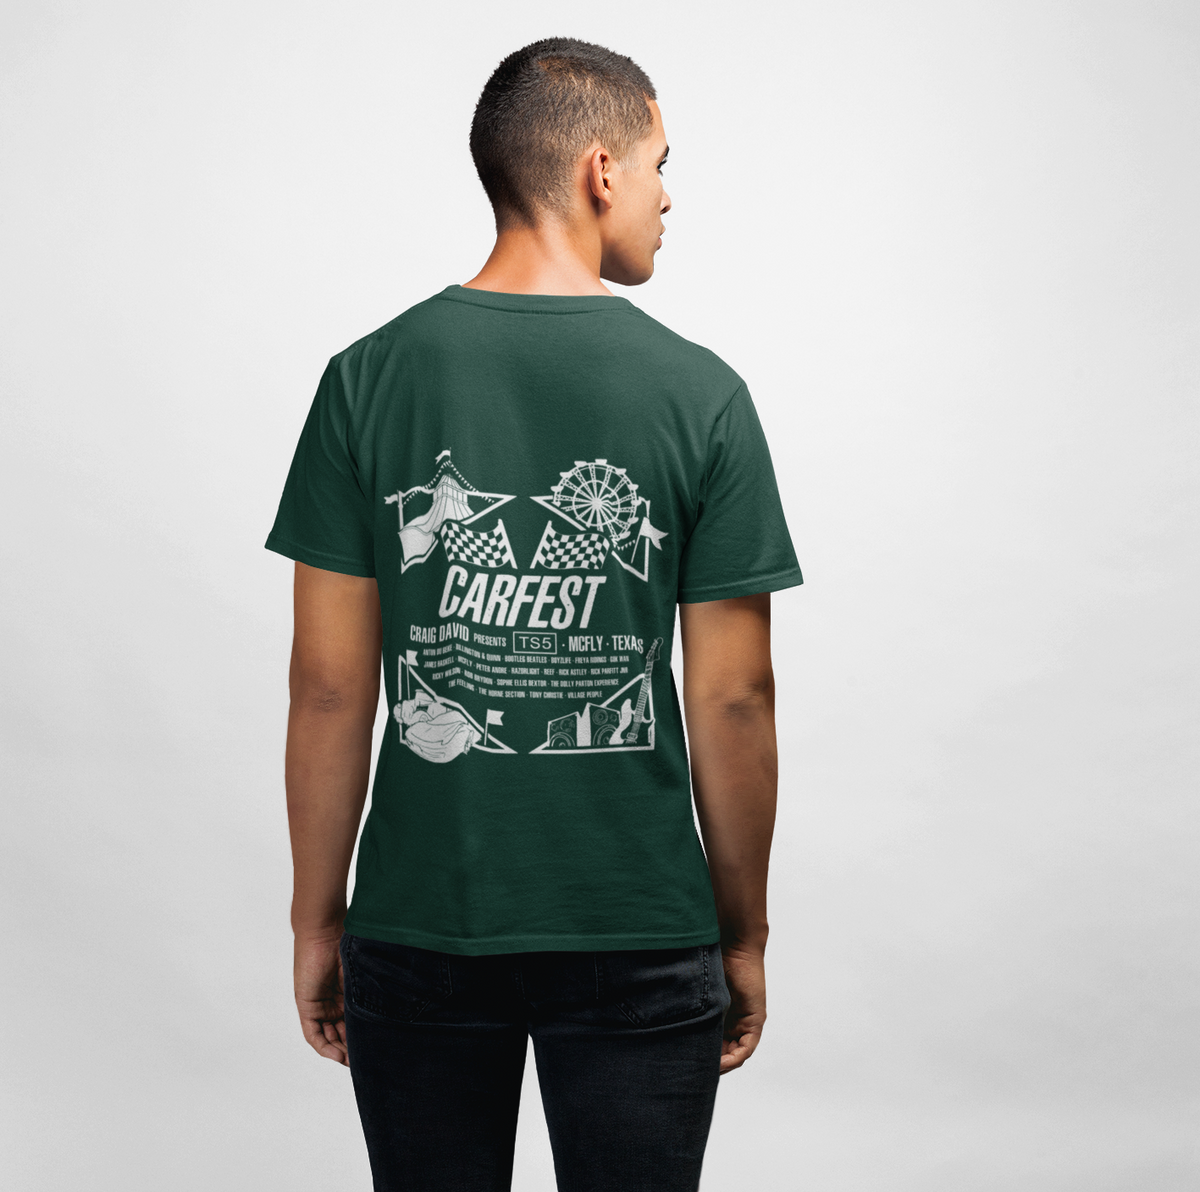 Carfest Flags Green T-shirt